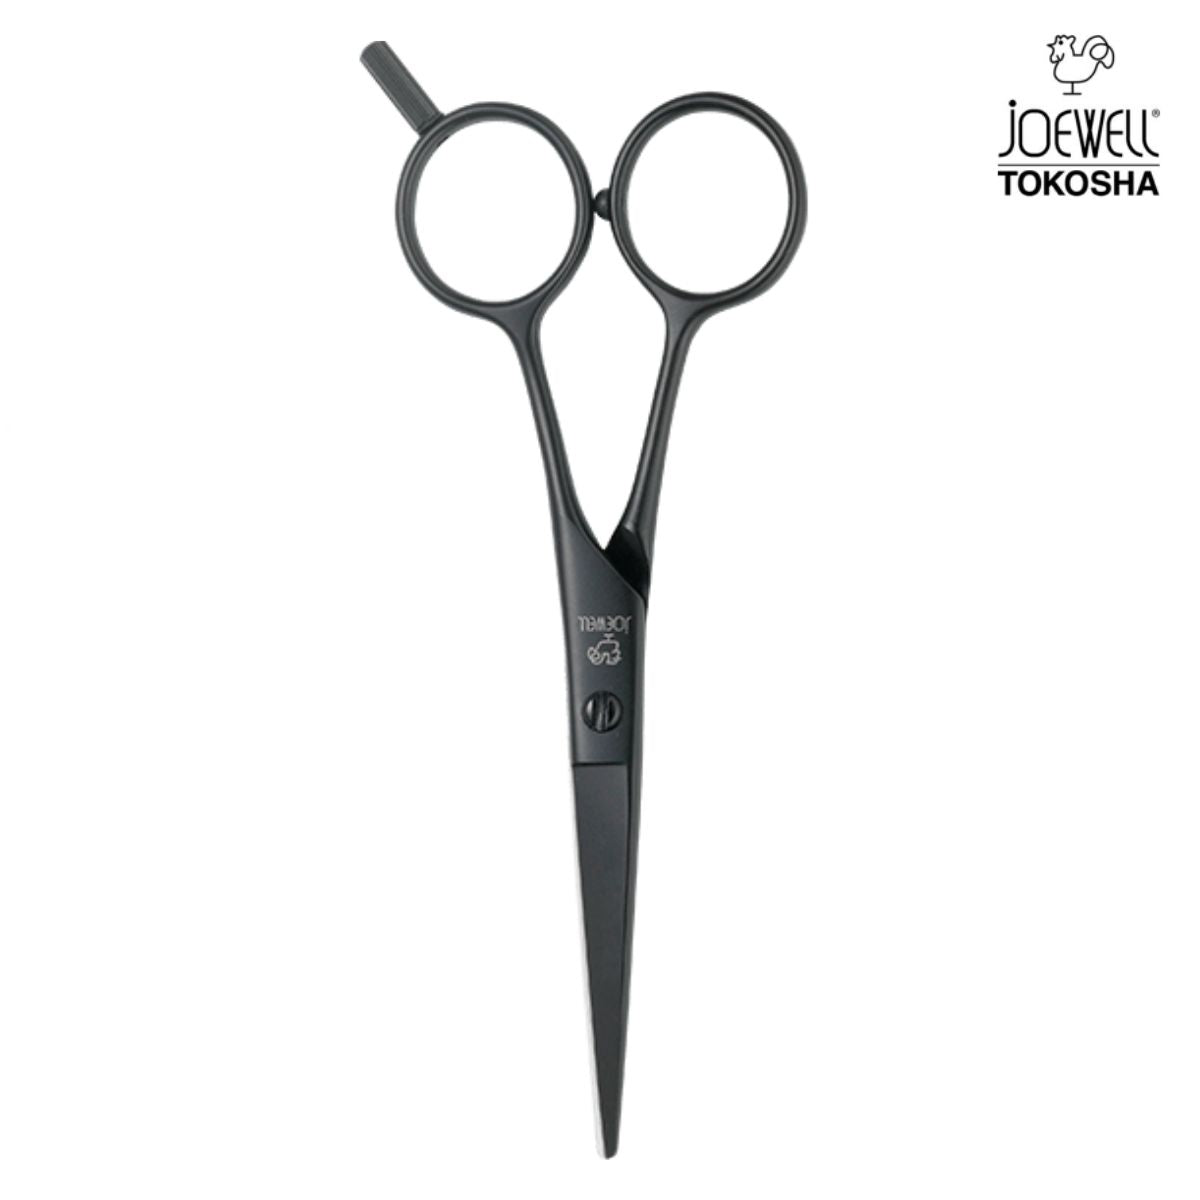 Alpen - Hairdresser scissors - AP5404.40